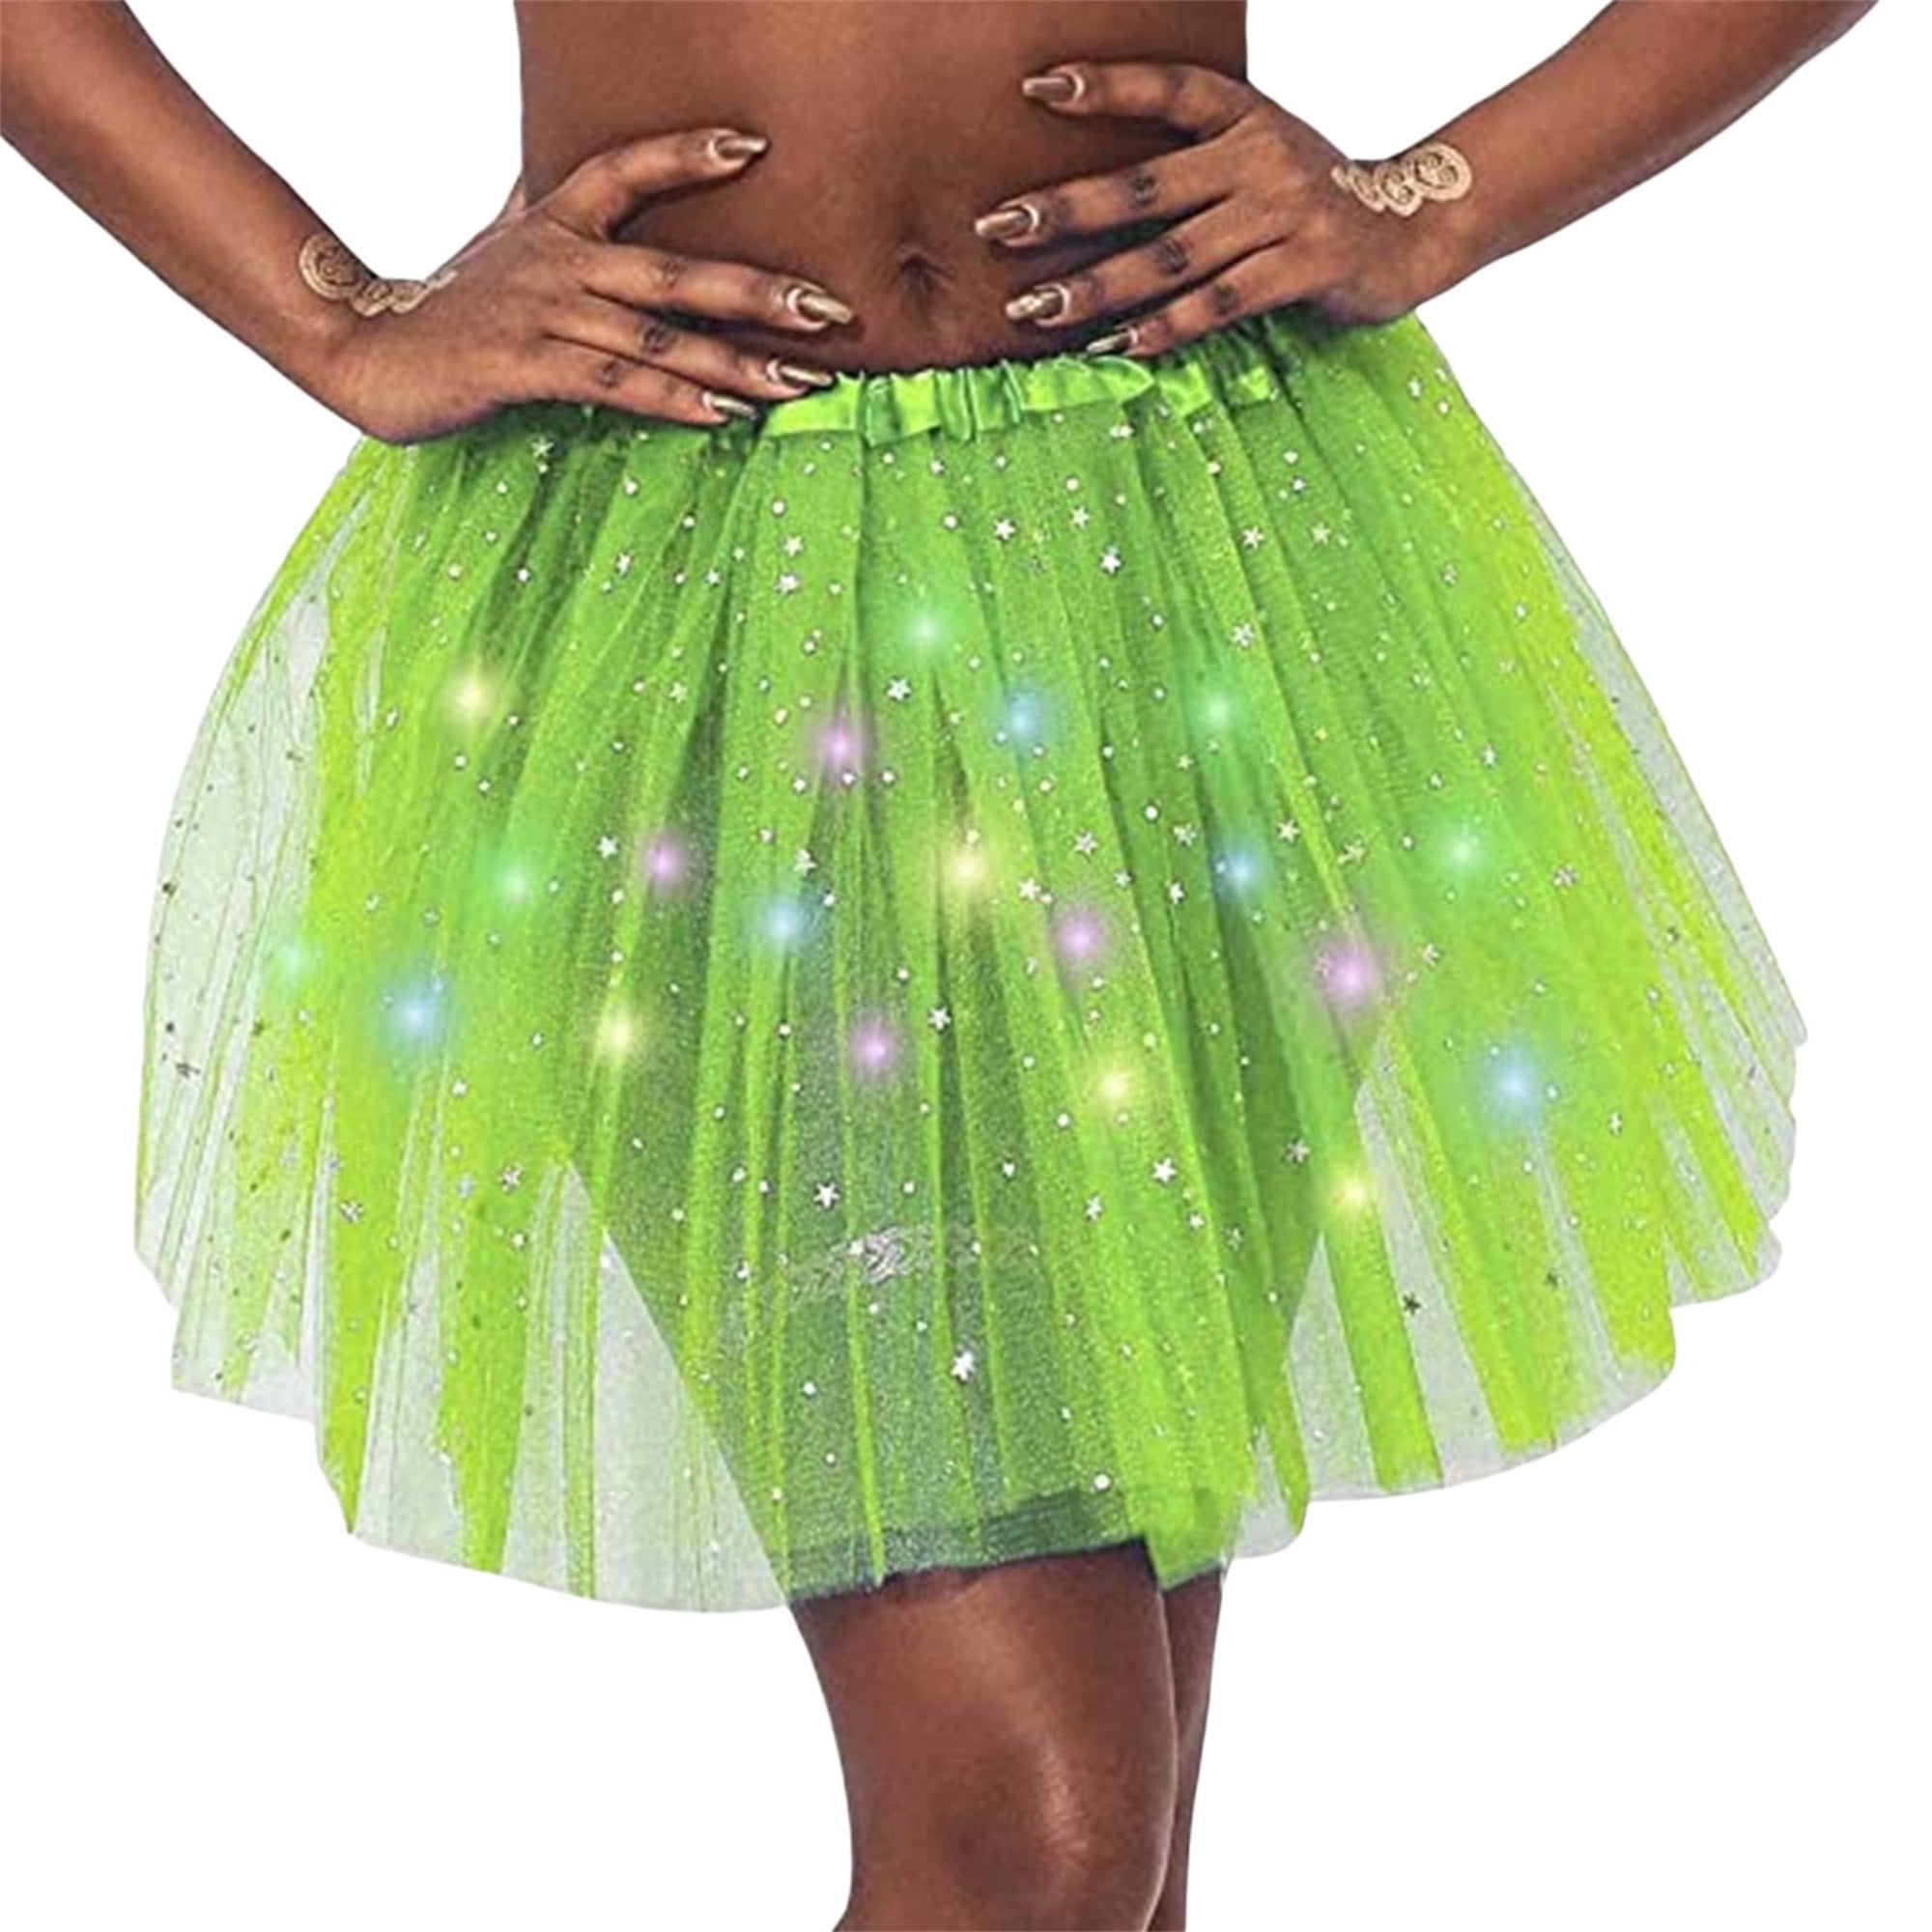 Sunisery Women's LED Skirt Light Up Star Dance Skirts Layered Ballet Elastic Mesh Tulle Party Carnival Christmas Halloween Costume - Walmart.com